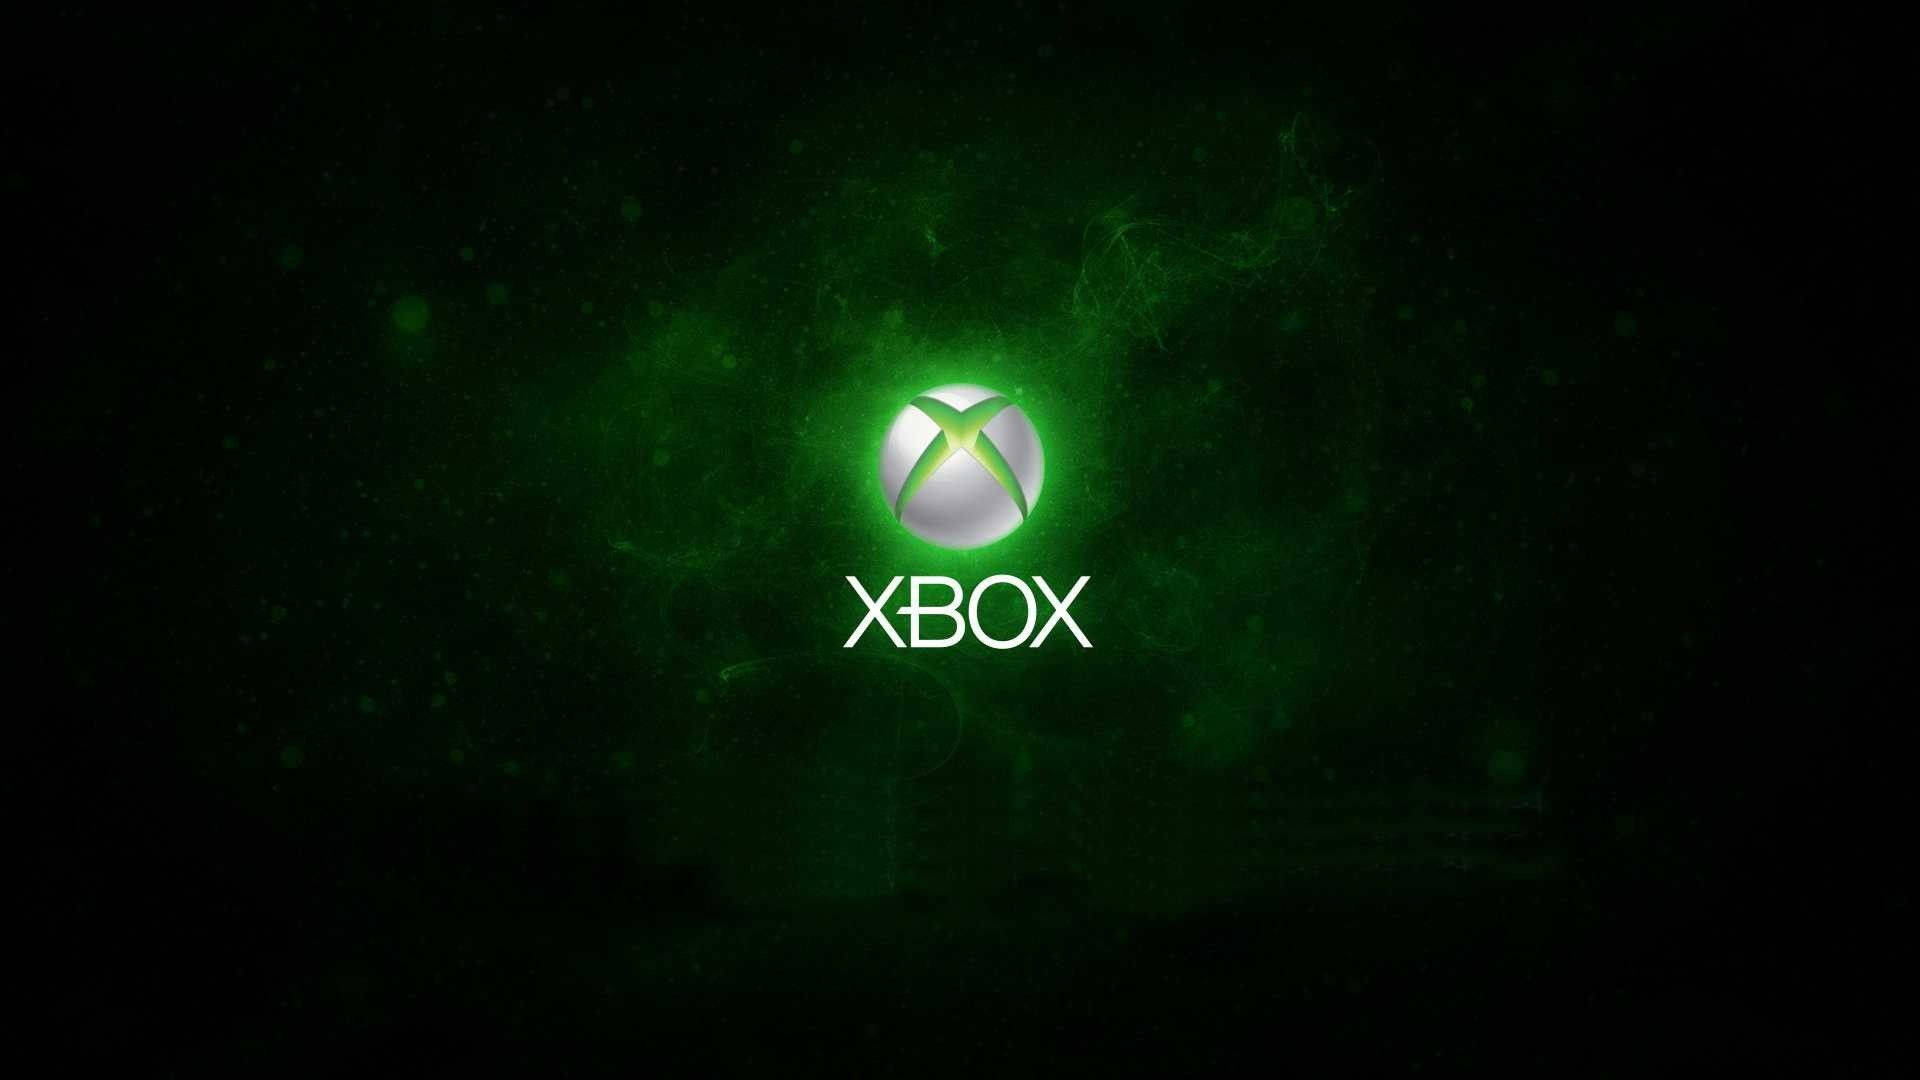 Hình nền Xbox miễn phí sẽ mang đến cho bạn niềm vui khi được sở hữu một mẫu mới tinh, tươi mới nhất. Tạo nên sự khác biệt cá nhân của bạn với kho ảnh đa dạng và phù hợp với mọi loại màn hình. Không phải tốn tiền, đơn giản chỉ cần tải về và trải nghiệm ngay.